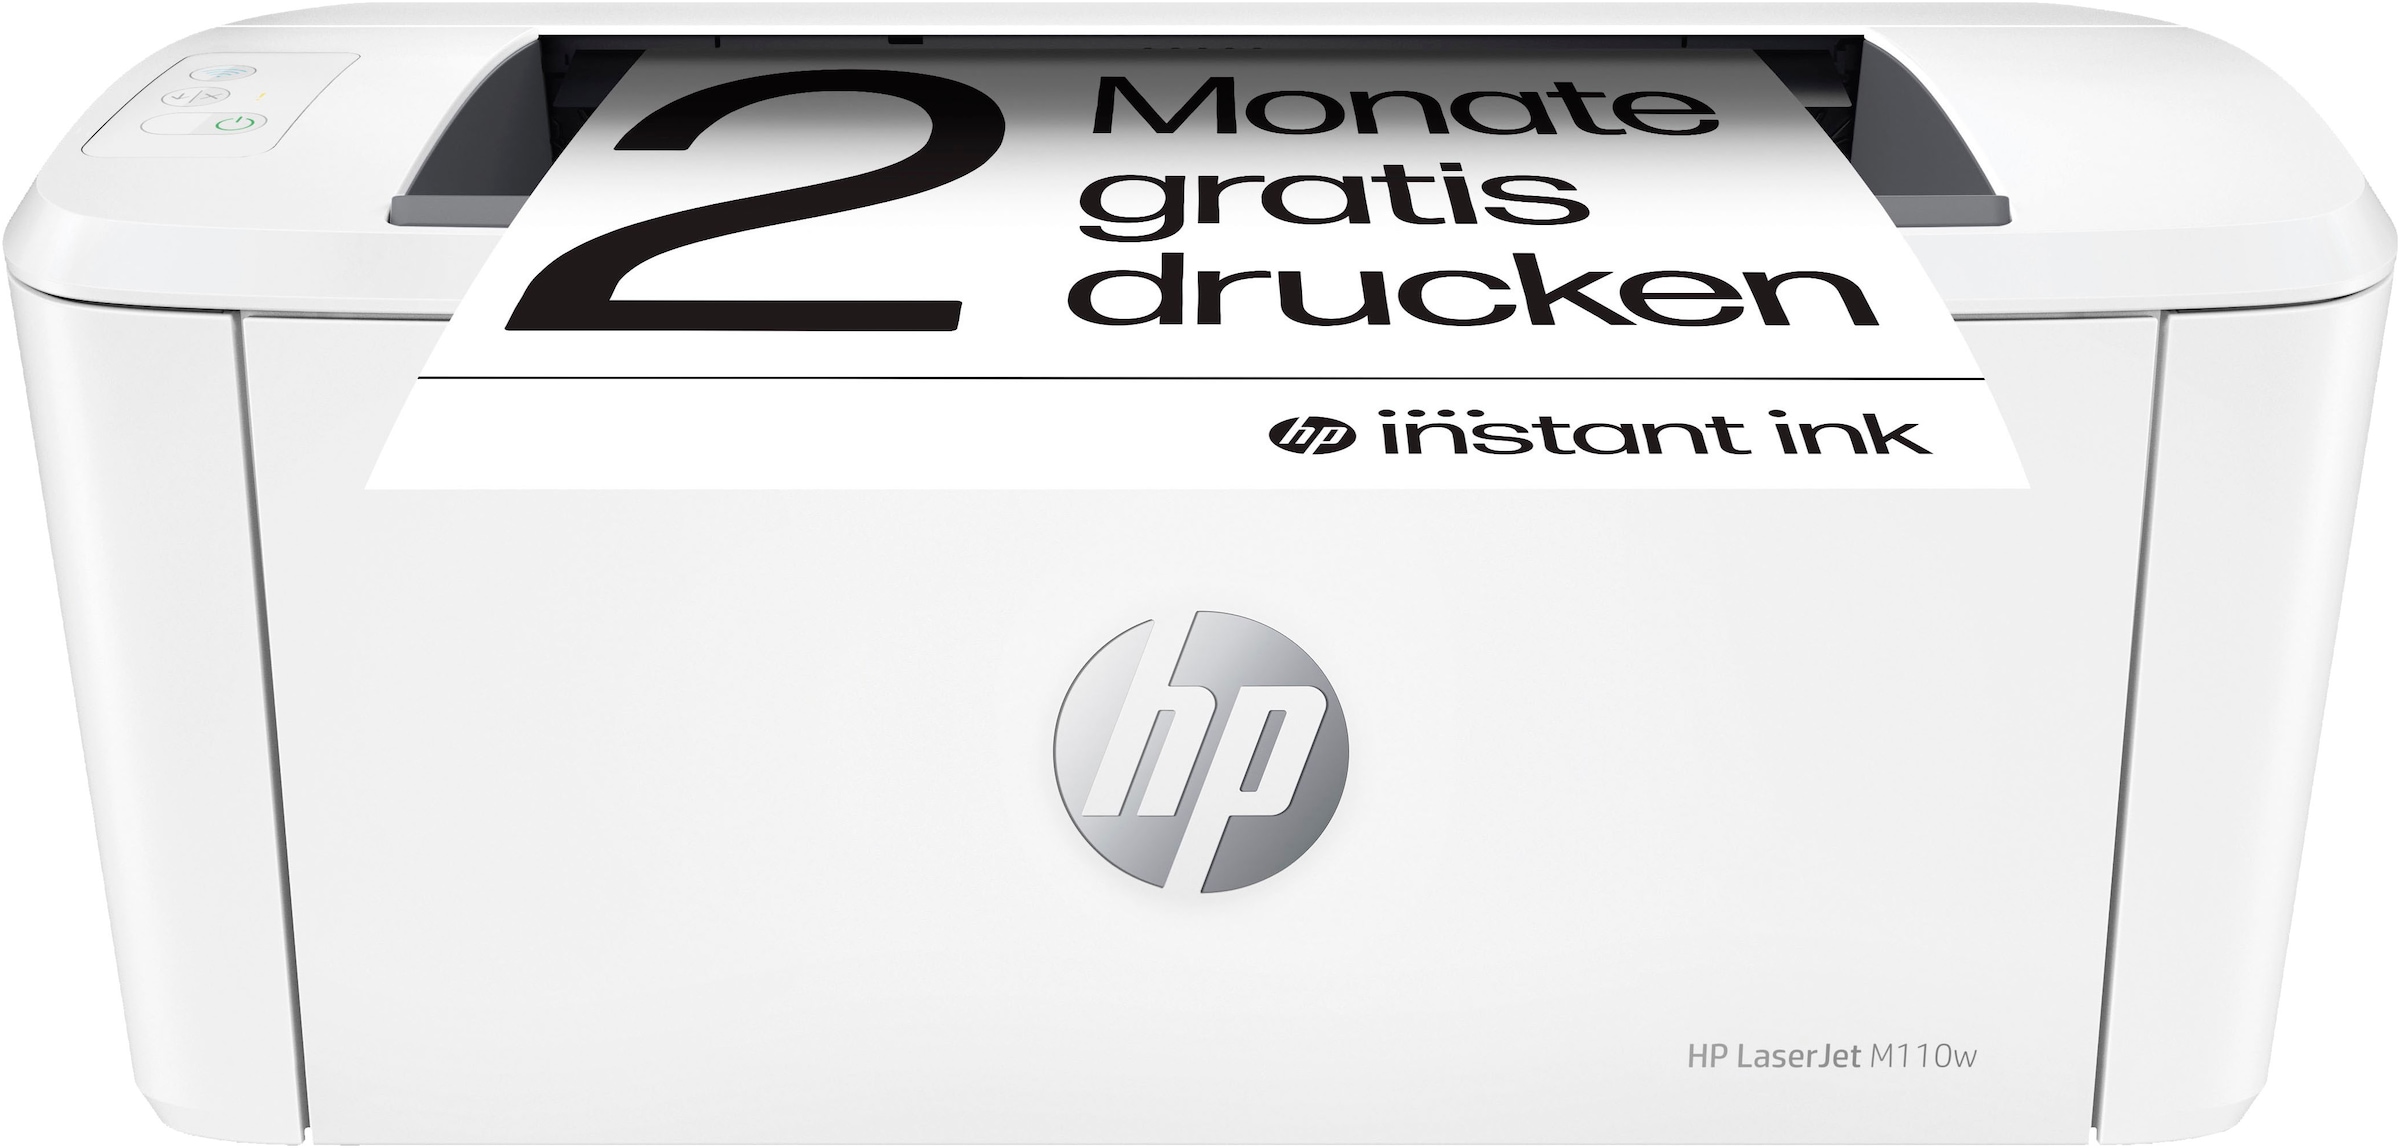 Schwarz-Weiß Laserdrucker »LaserJet M110w«, 2 Monate gratis Drucken mit HP Instant Ink...